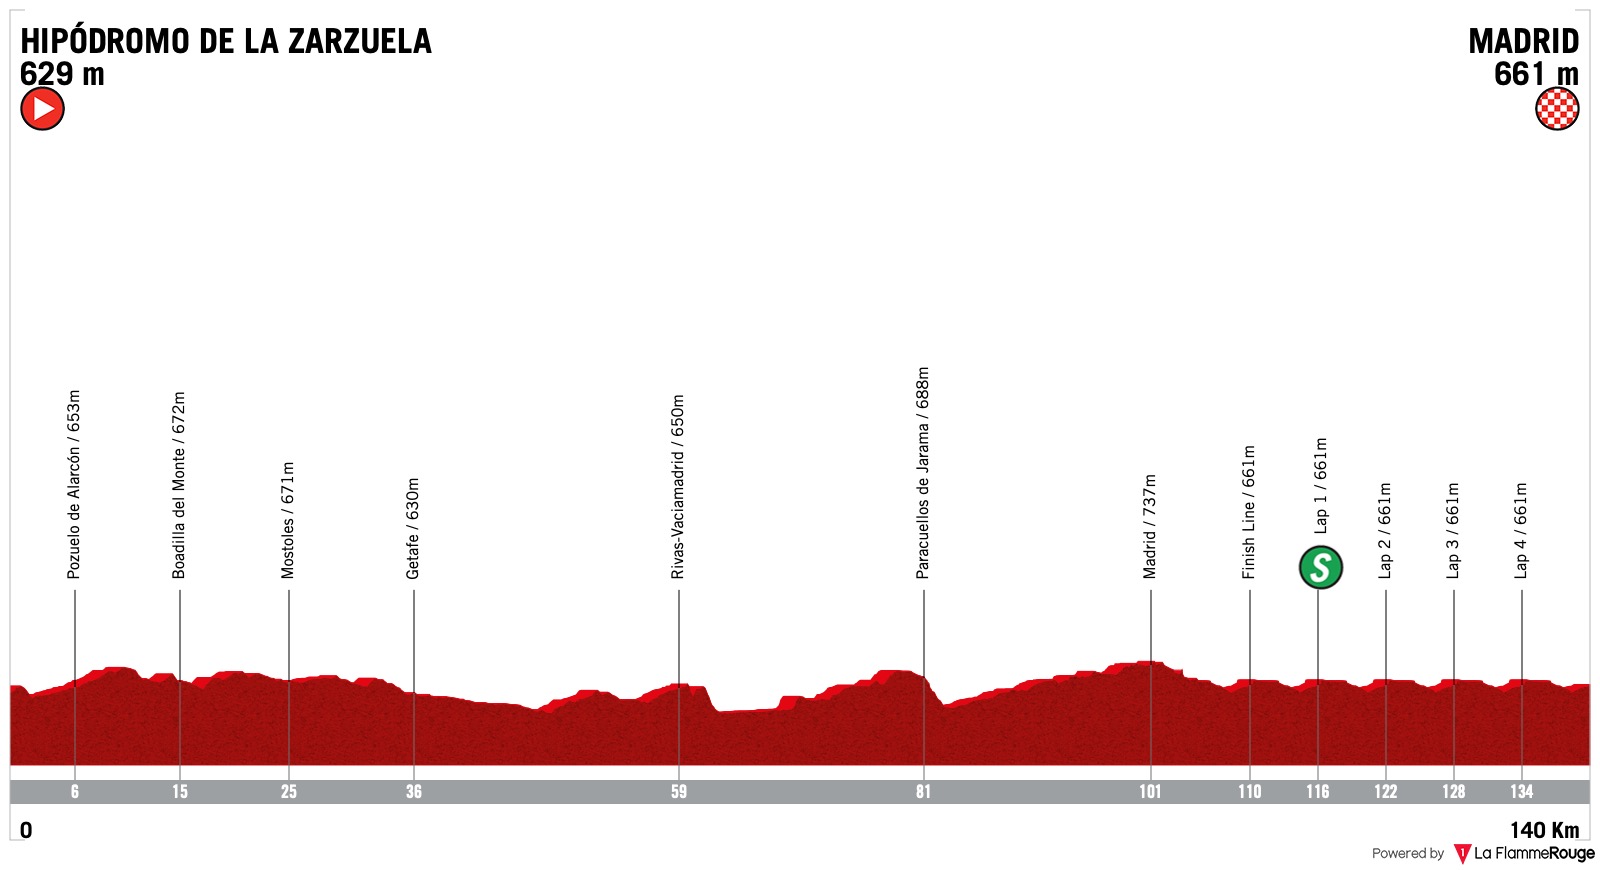 Vuelta a espana official website